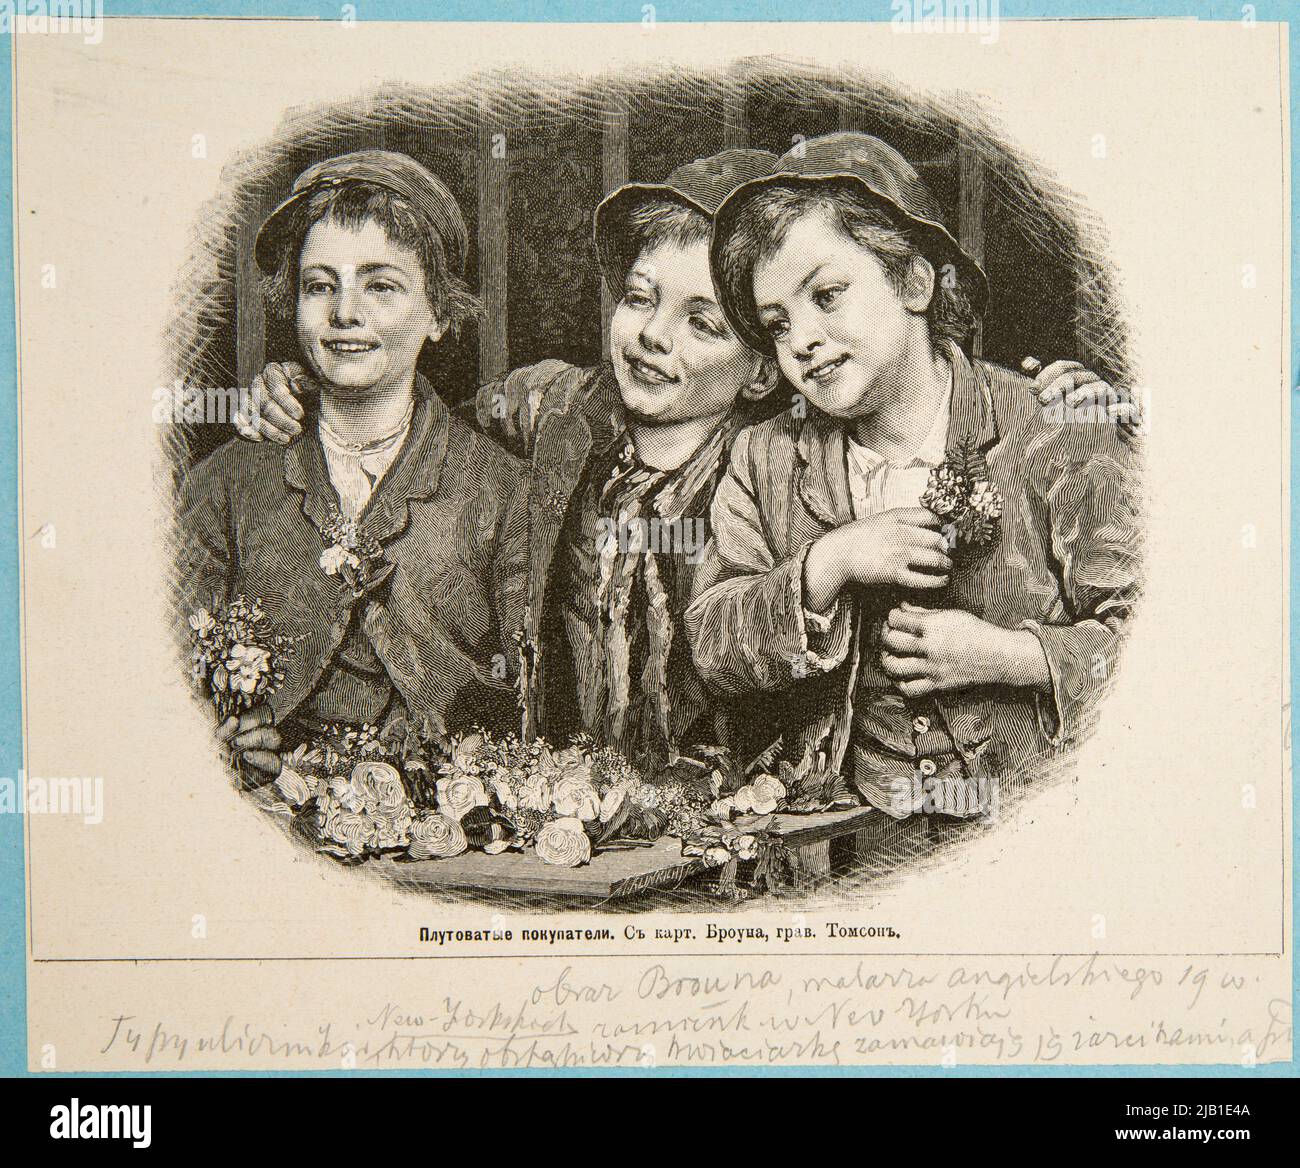 Les acheteurs de soins selon la peinture de Brown. Un clip d'un magazine russe Klinkicht, Moritz (1849 1932), Tomson (N.N.), Brown (N.N.) Banque D'Images